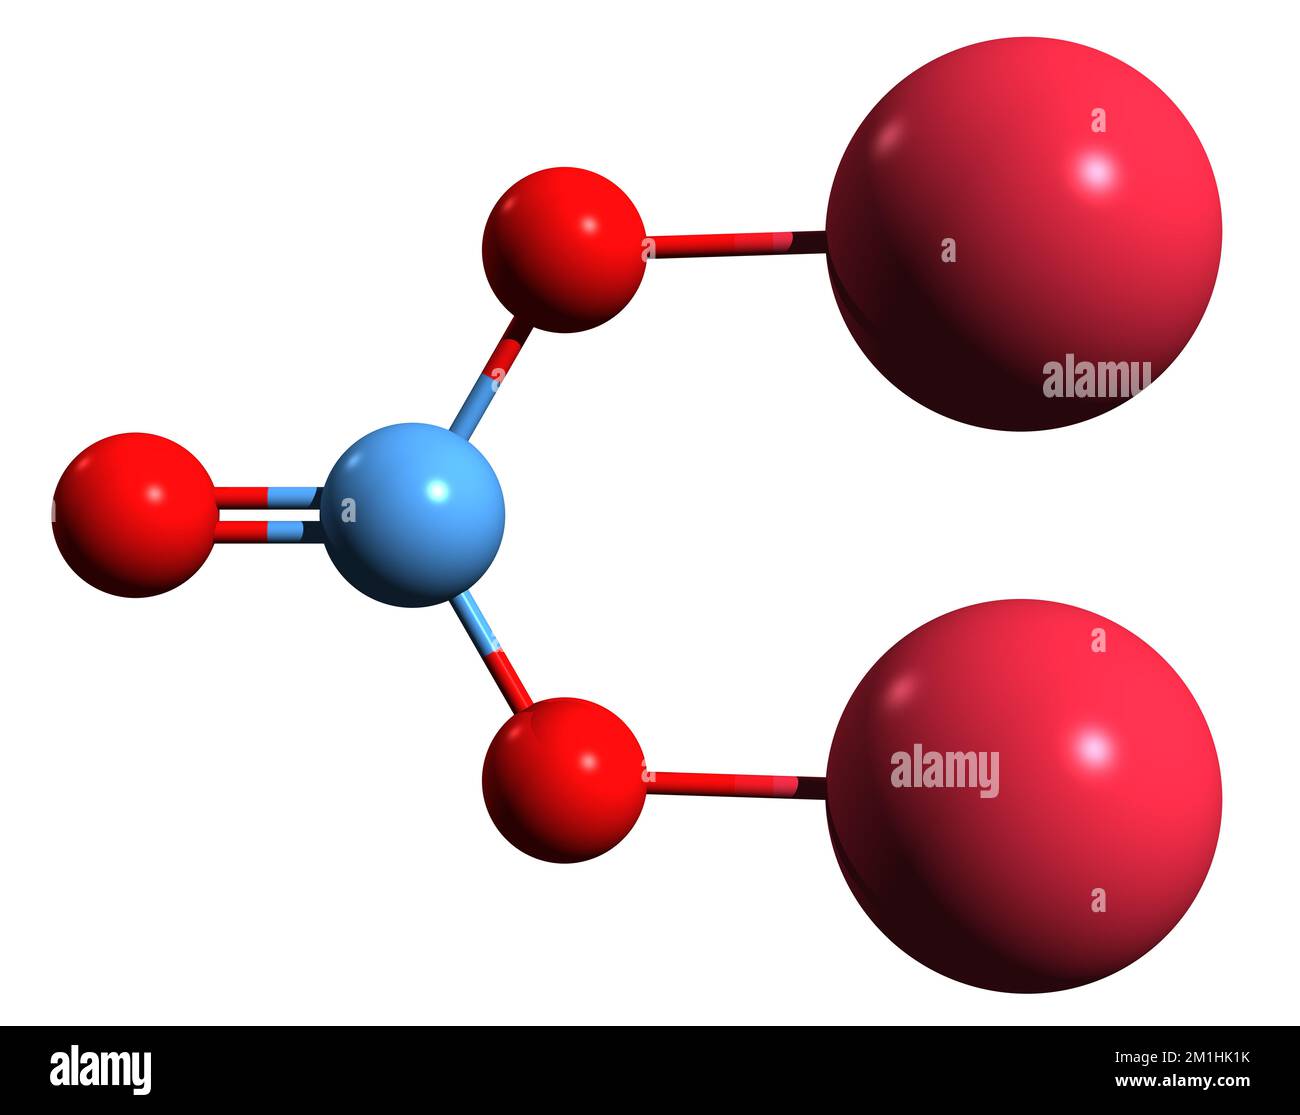 3D IMAGEN DE CARBONATO DE SODIO Fórmula esquelética - estructura química molecular del compuesto inorgánico ceniza de soda aislada sobre fondo blanco Foto de stock